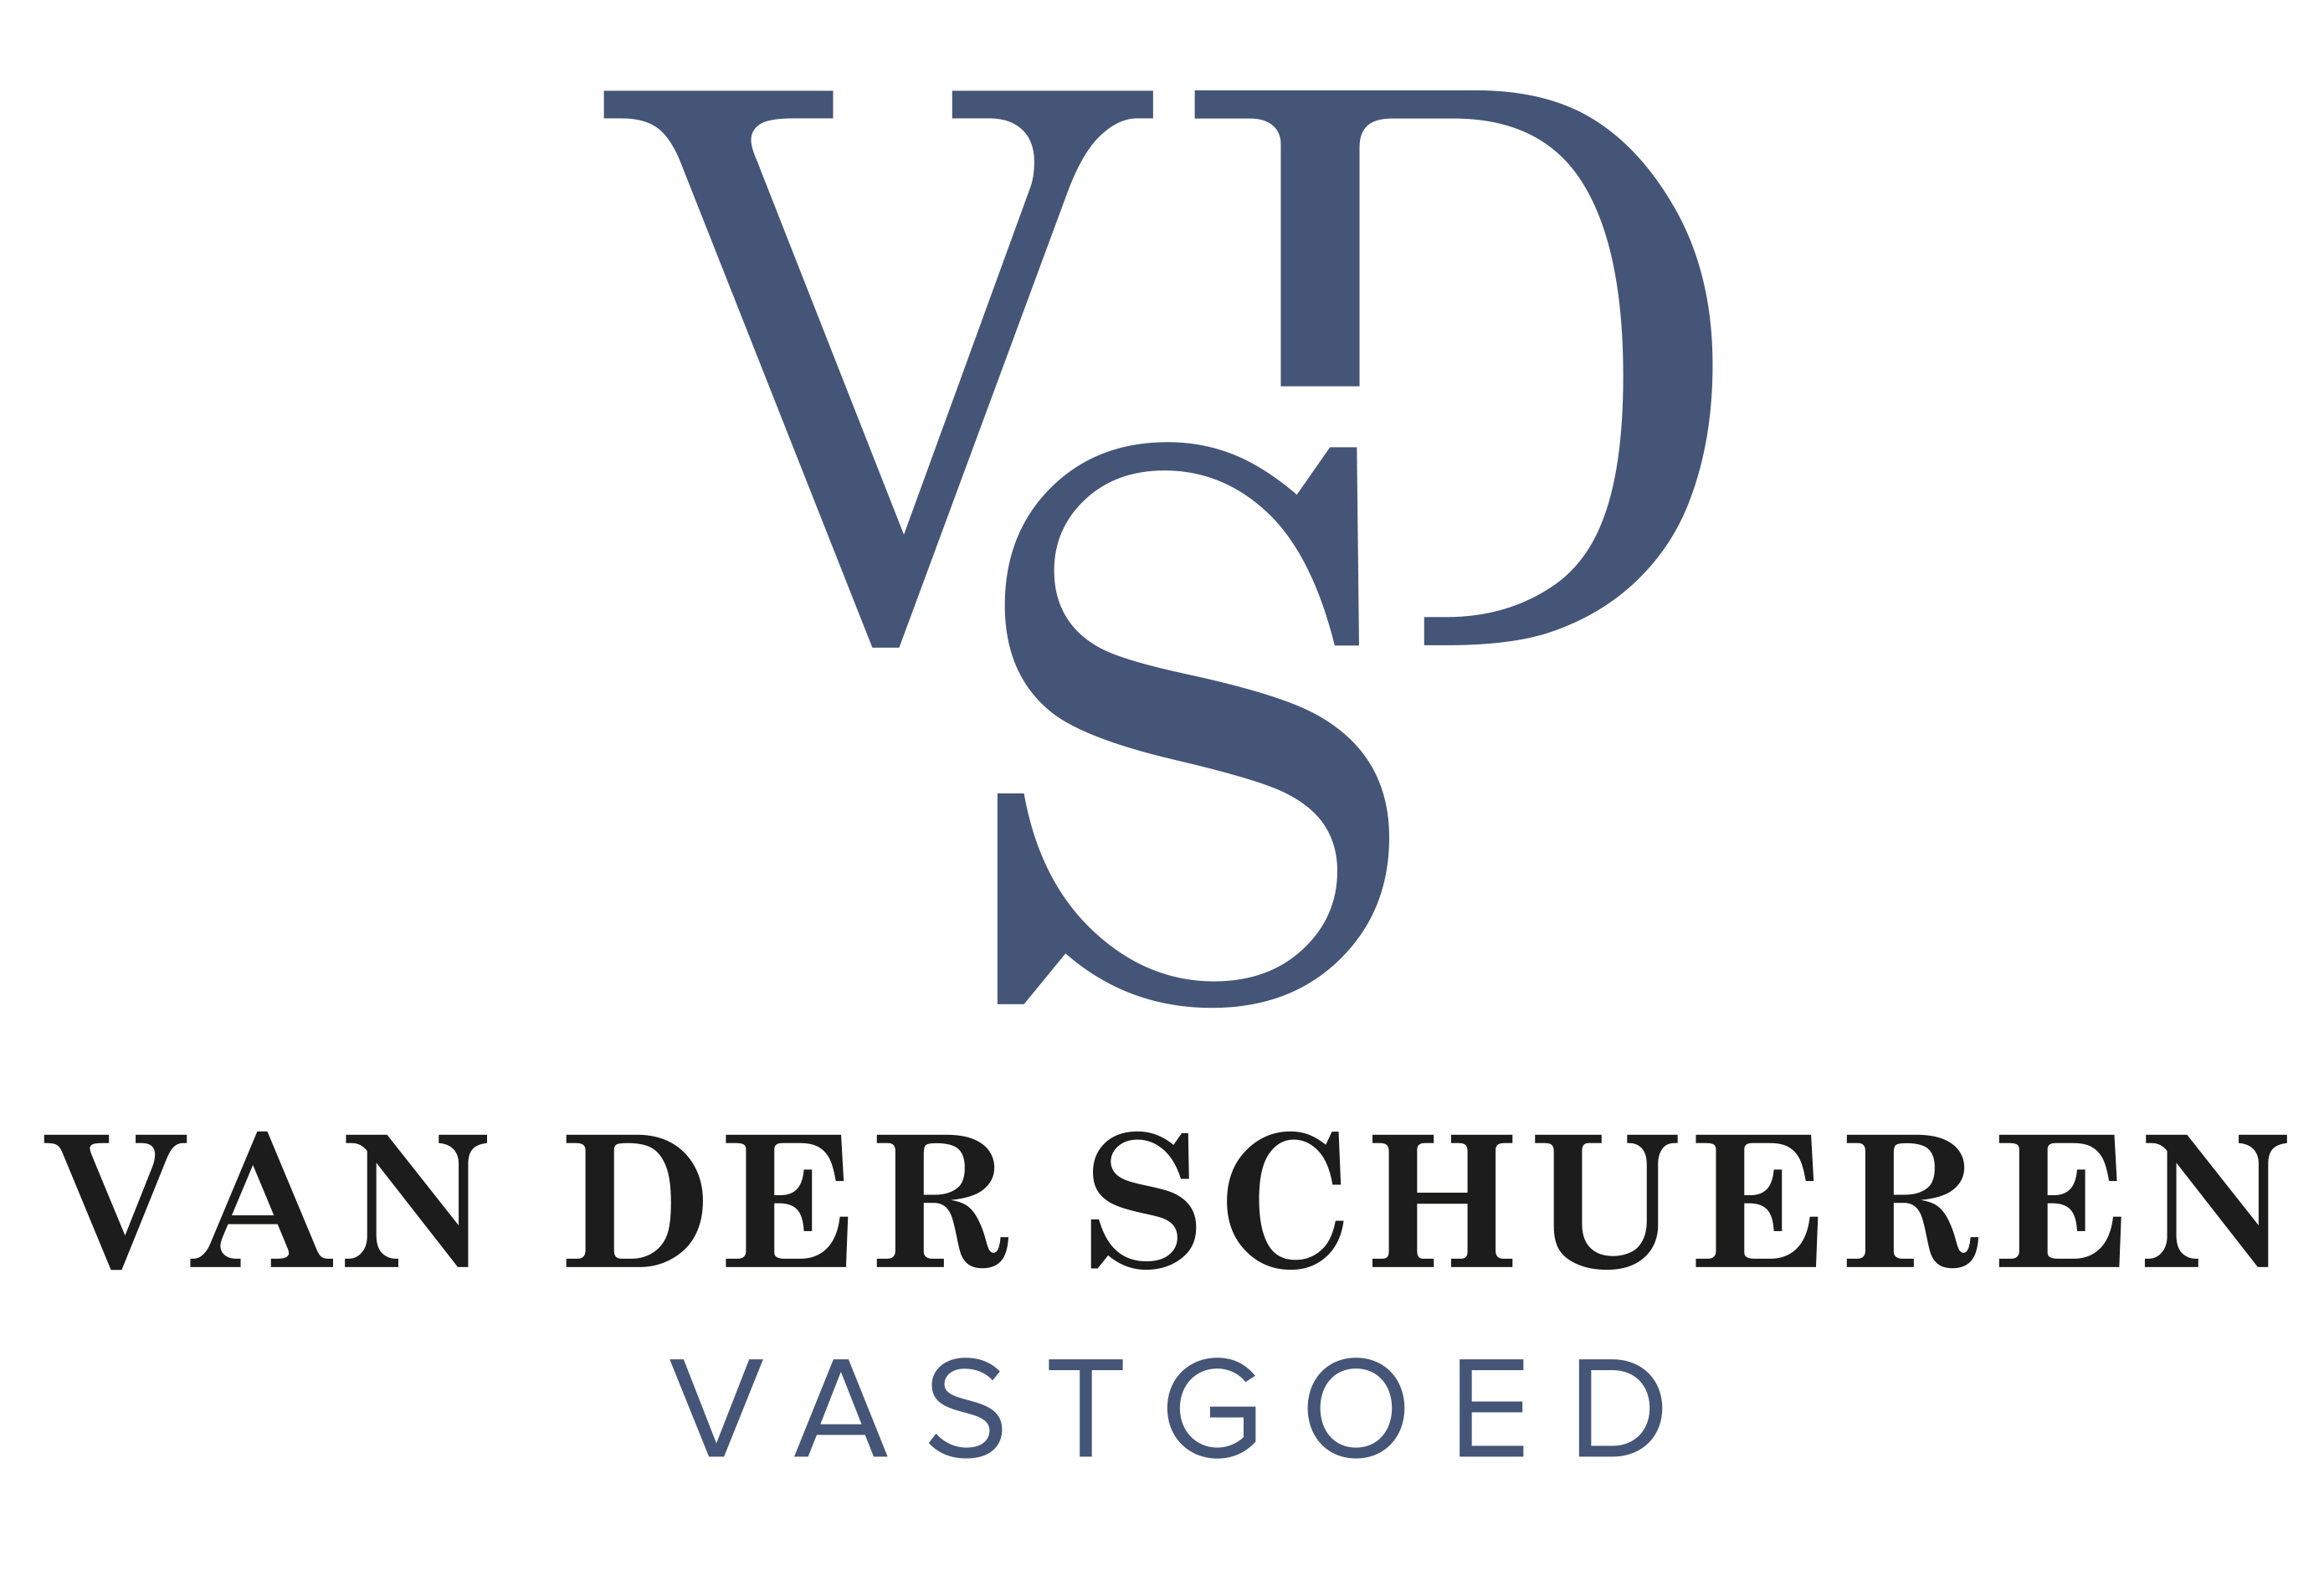 Logo van VDS Vastgoed